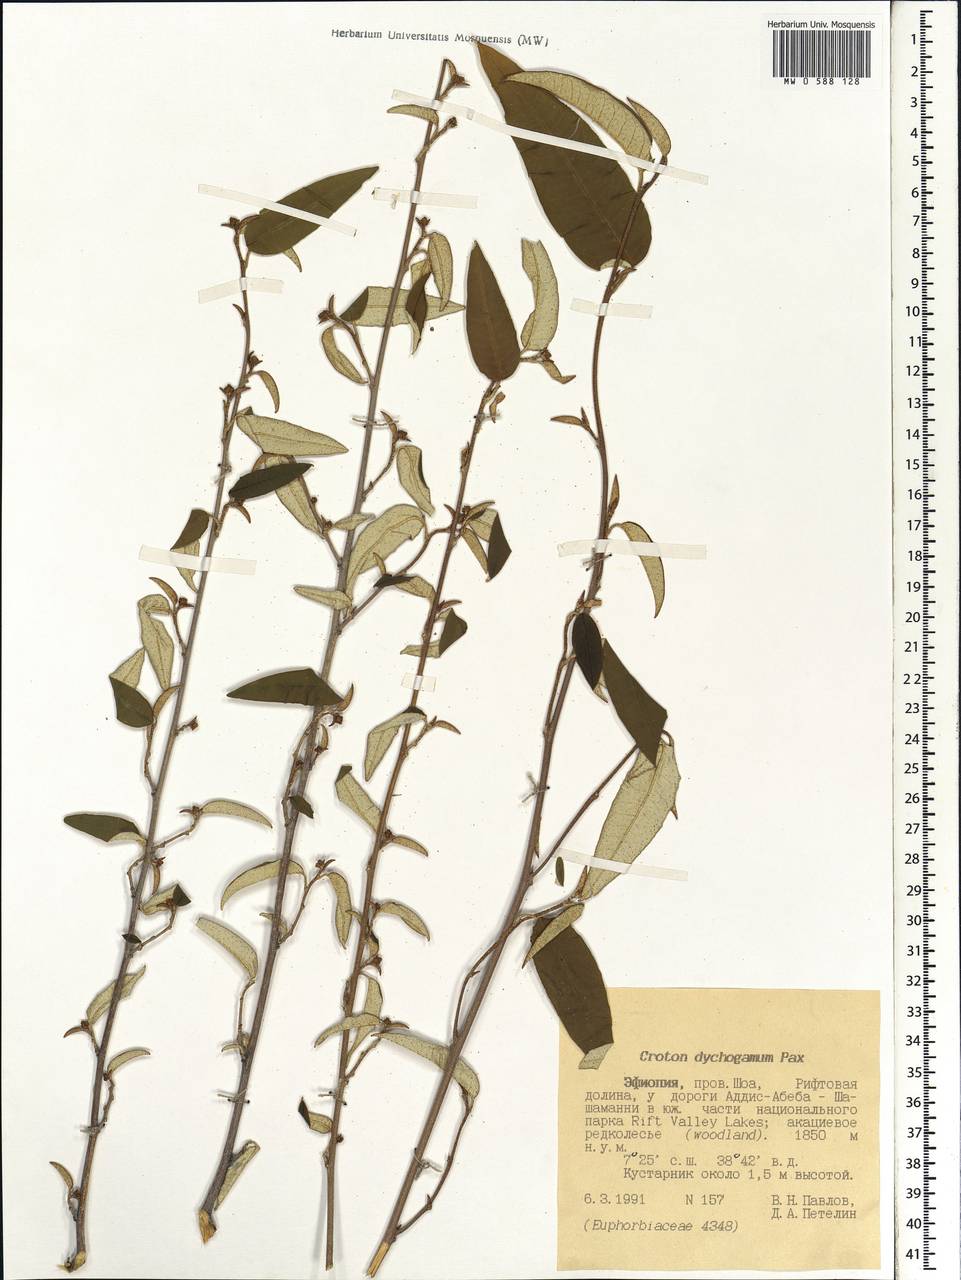 Croton dichogamus Pax, Africa (AFR) (Ethiopia)